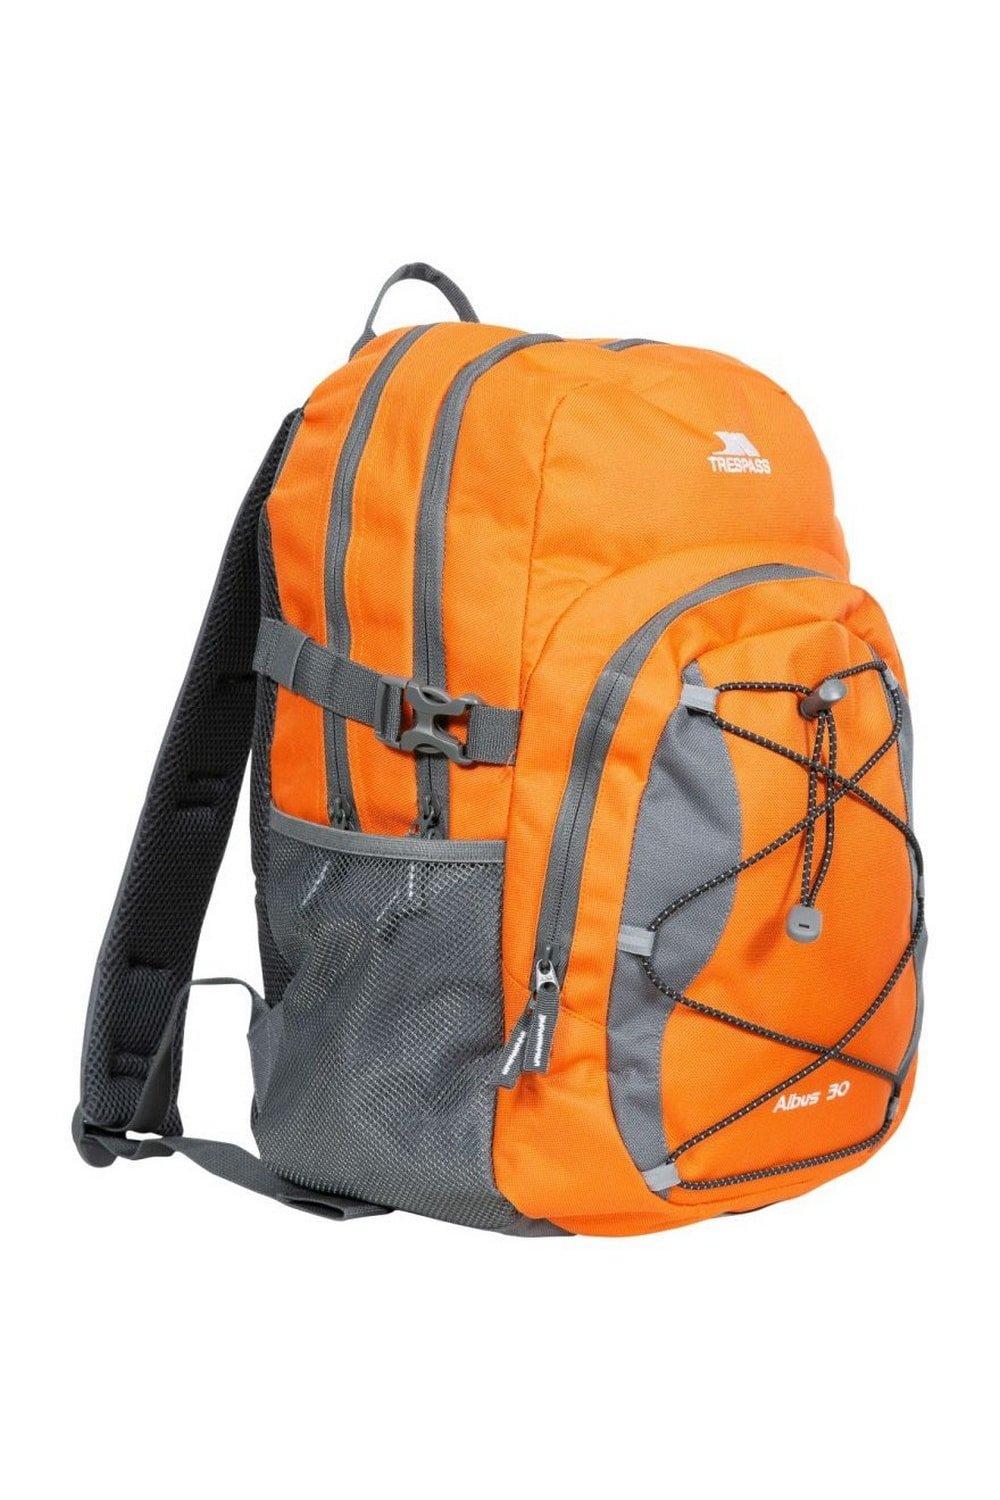 Повседневный рюкзак/рюкзак Albus 30 литров Trespass, оранжевый